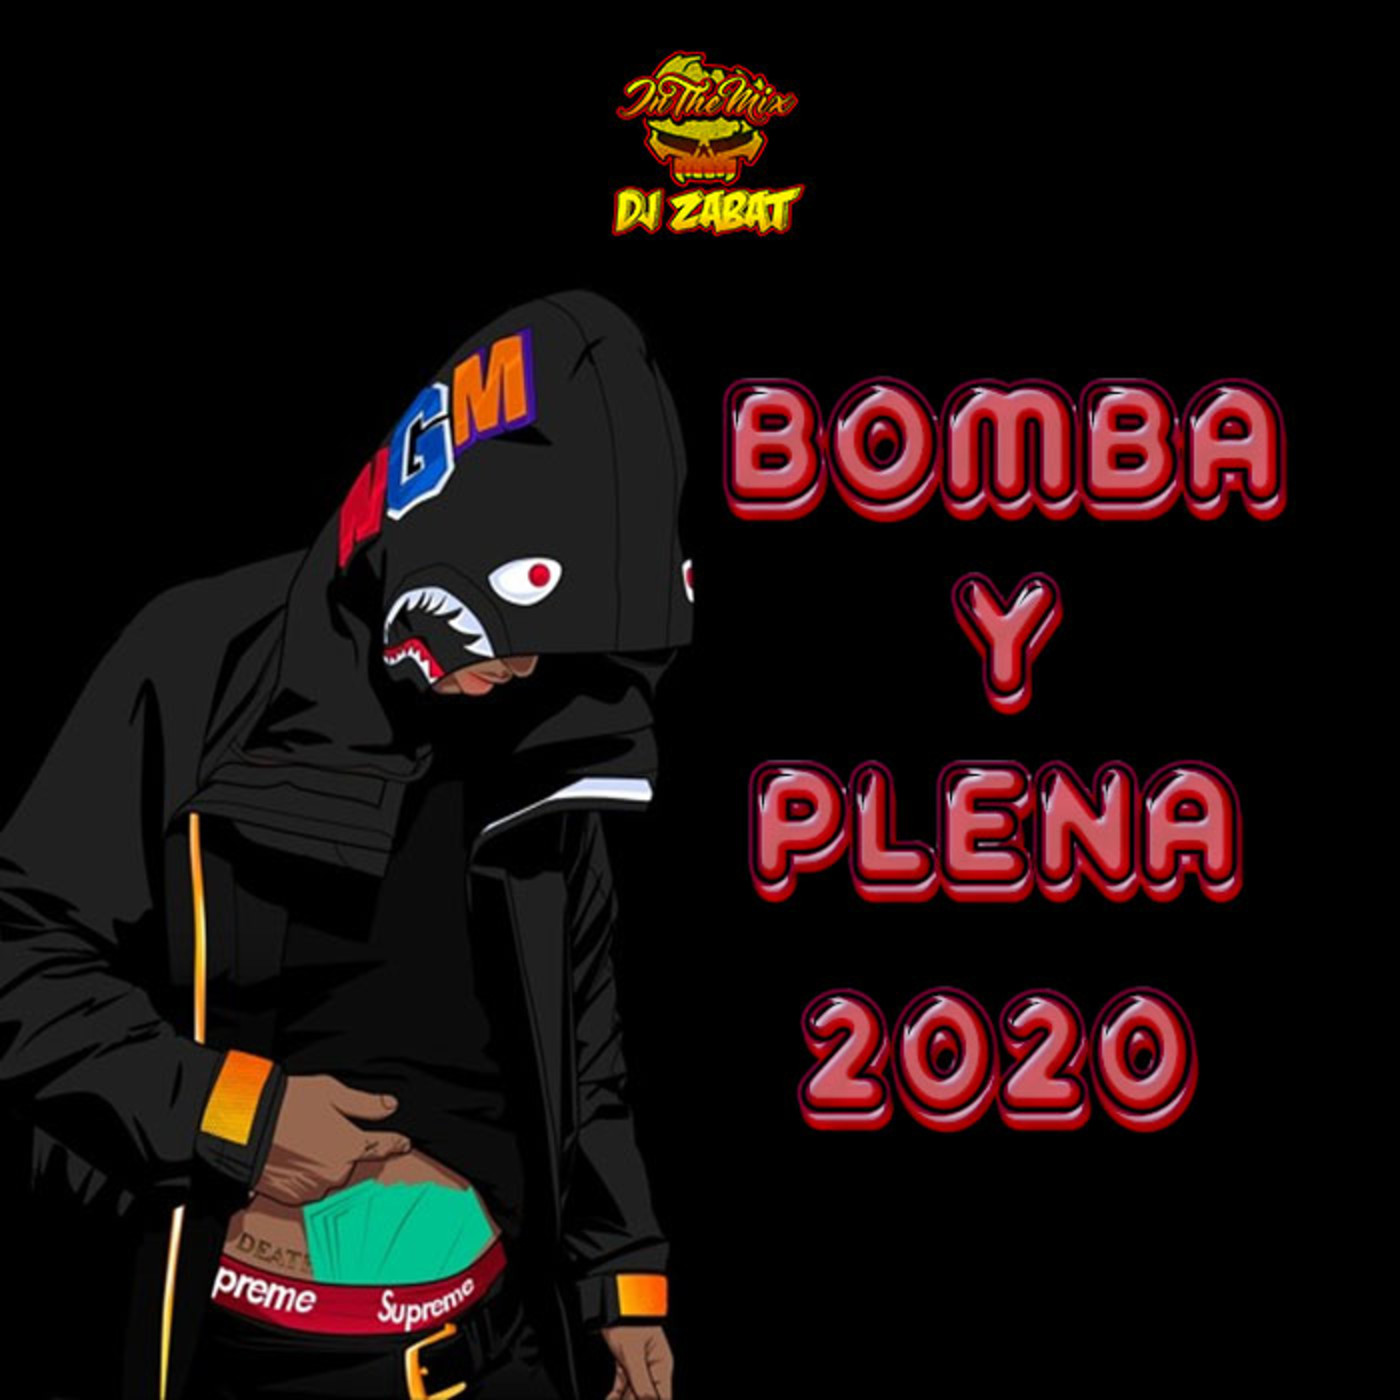 @DjZabat - Bomba y Plena 2020 Mix